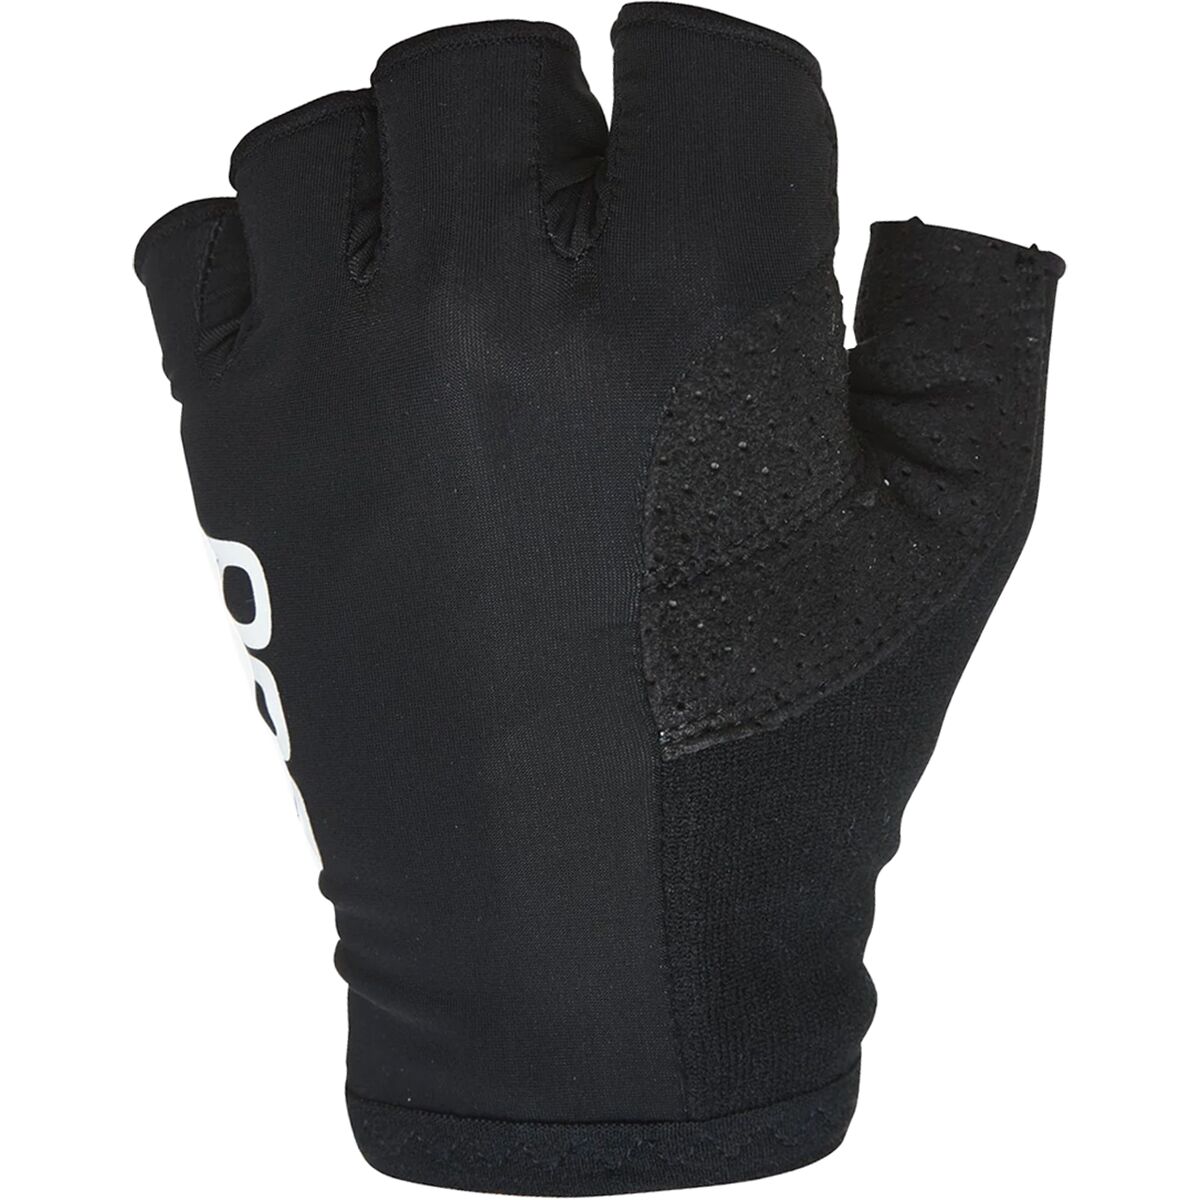 POC Essential Road Light Glove - Men's